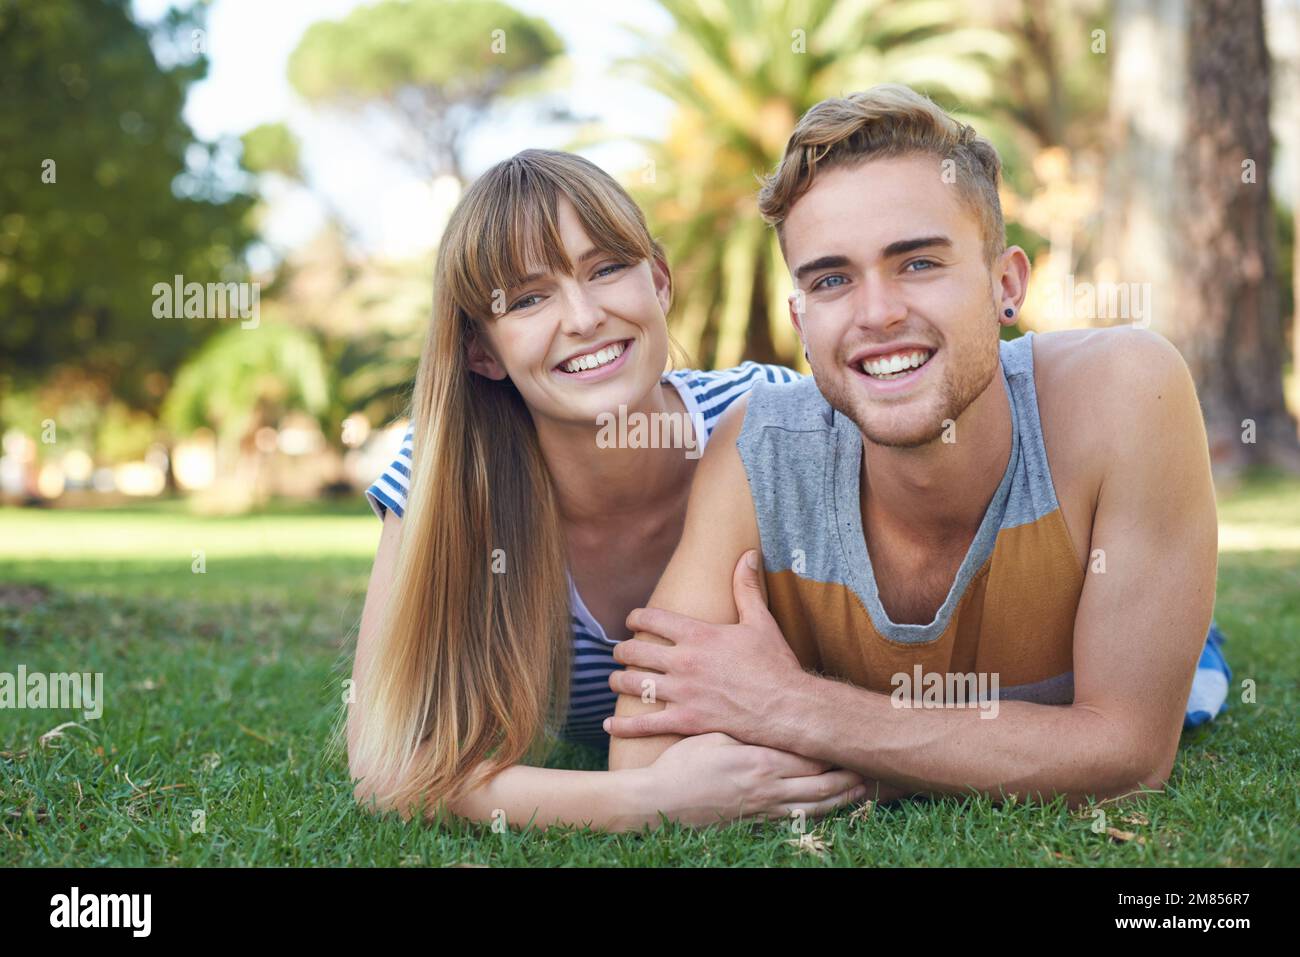 Relajarse en el parque. Retrato de una joven pareja feliz tumbada en el parque. Foto de stock